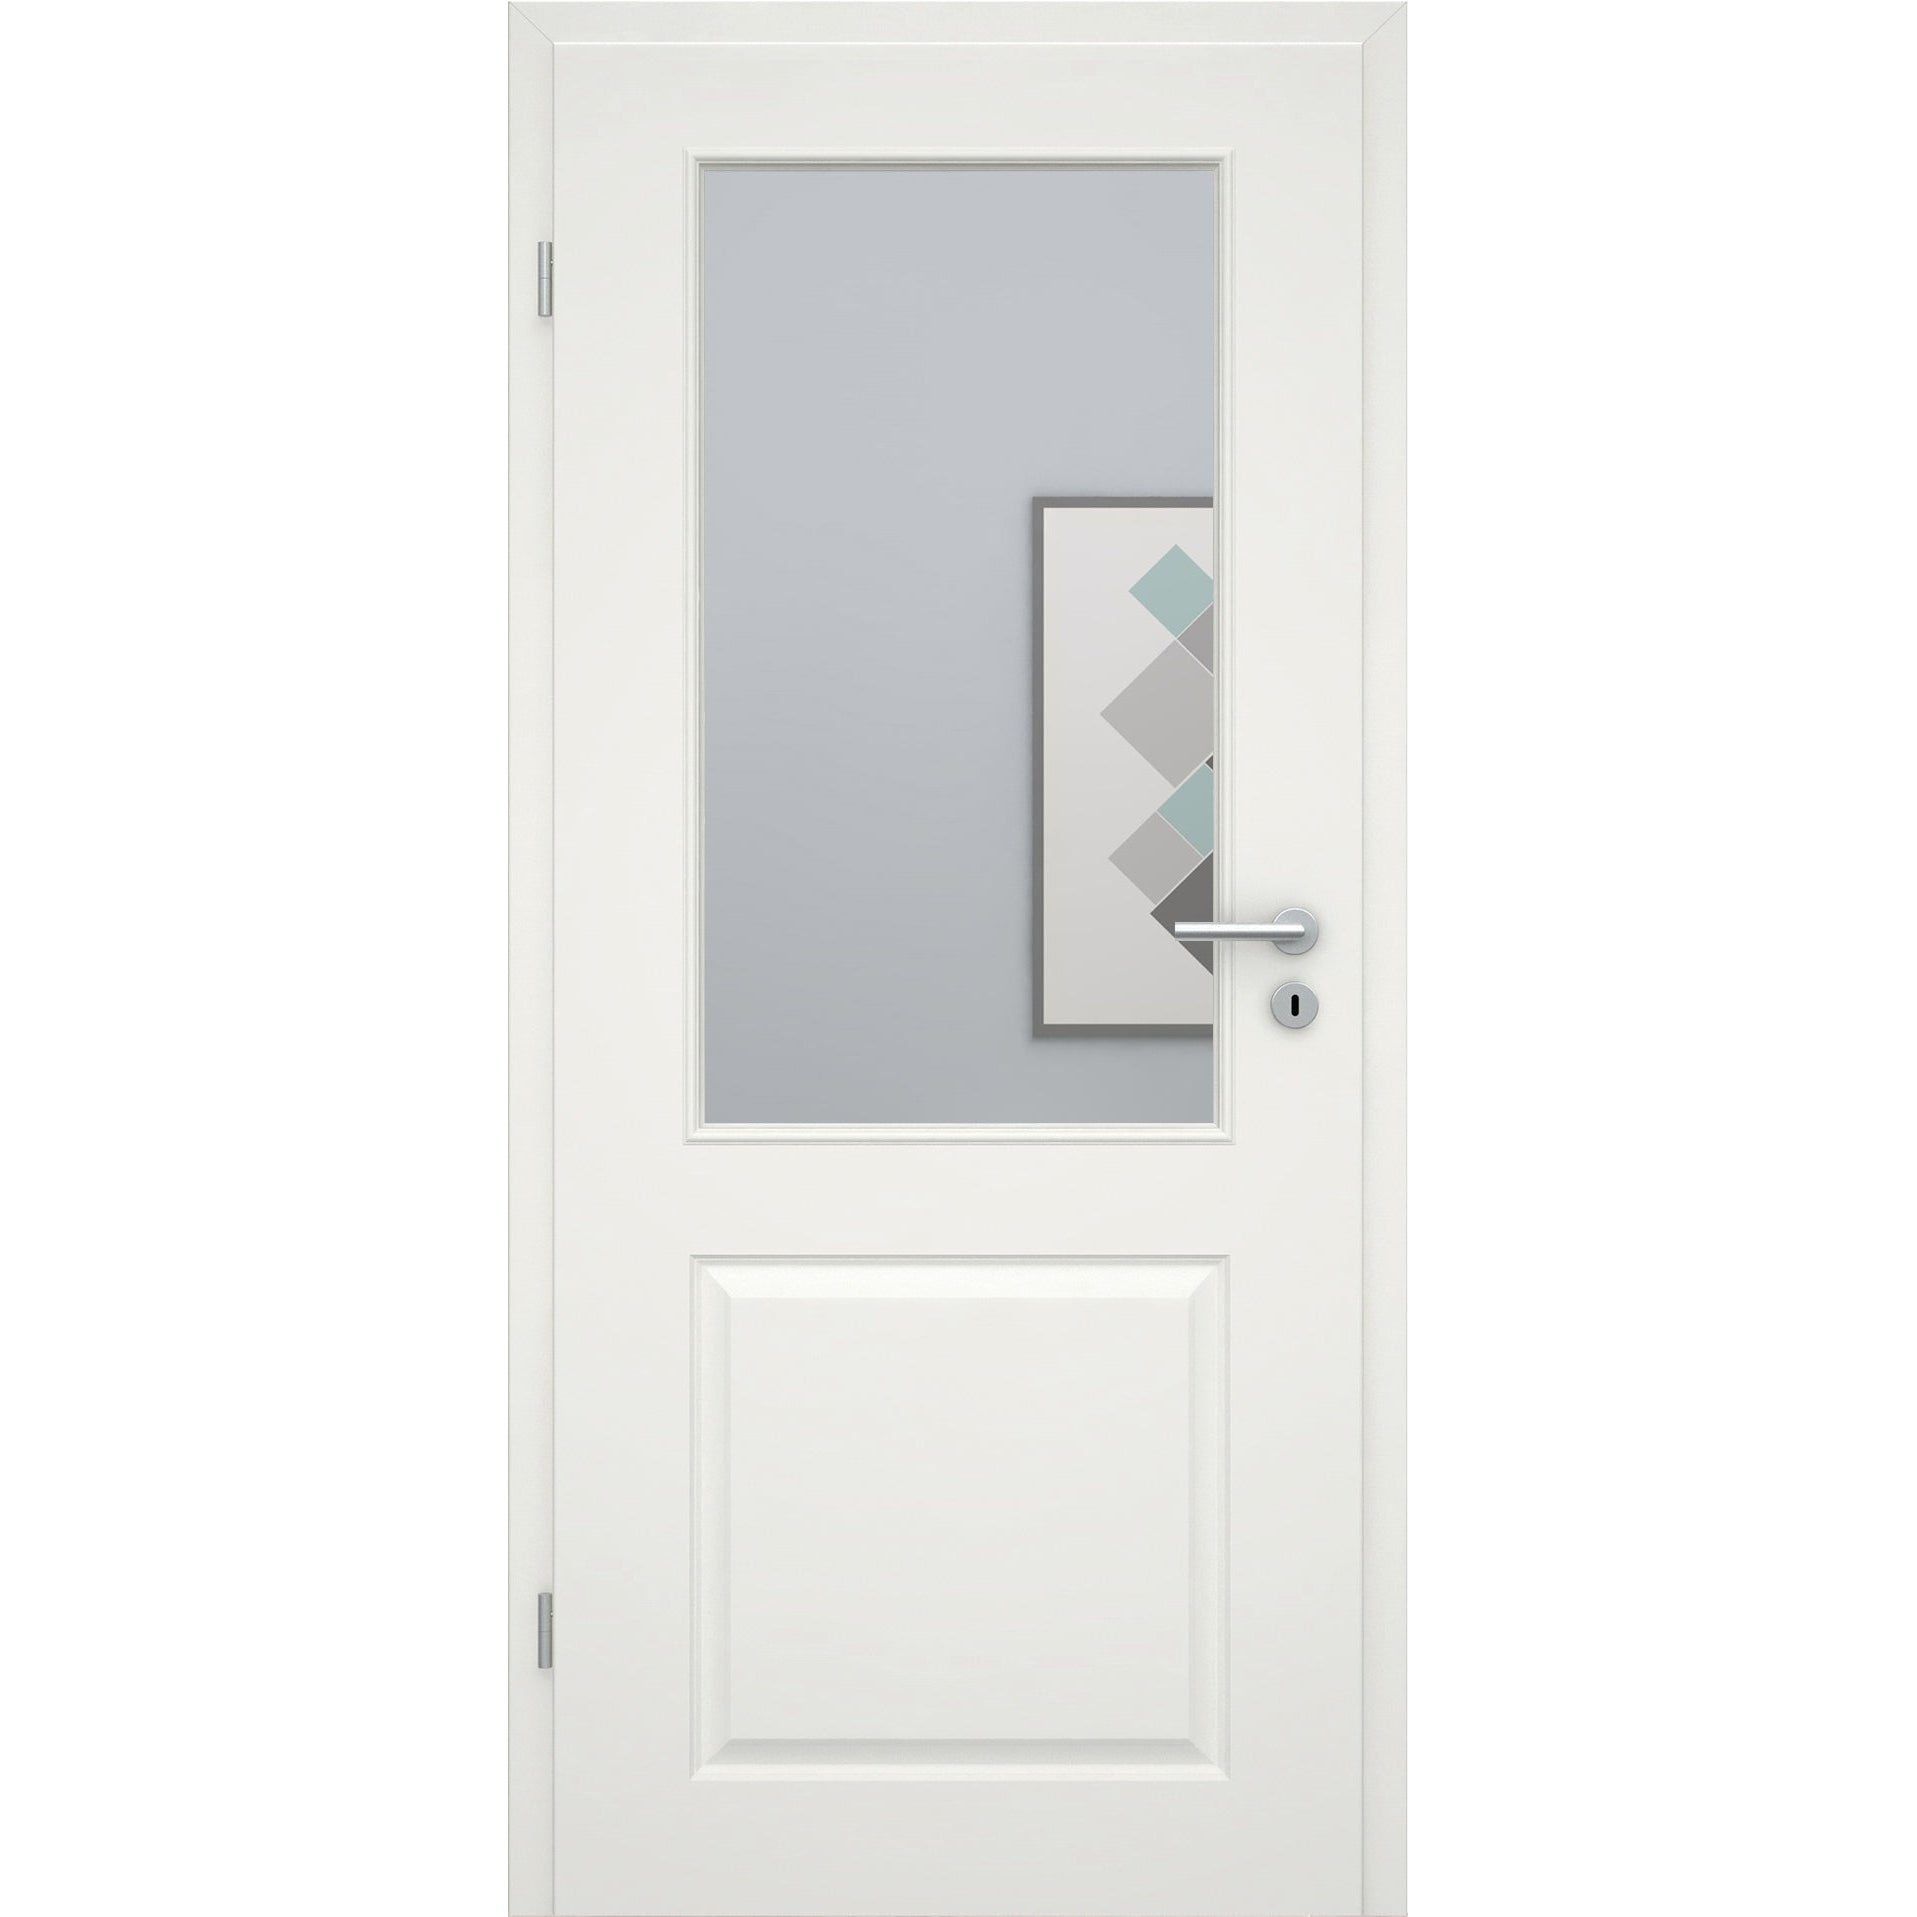 Zimmertür soft-weiß Stiltür mit 2 Kassetten und Lichtausschnitt Rundkante - Modell Stiltür K21LA